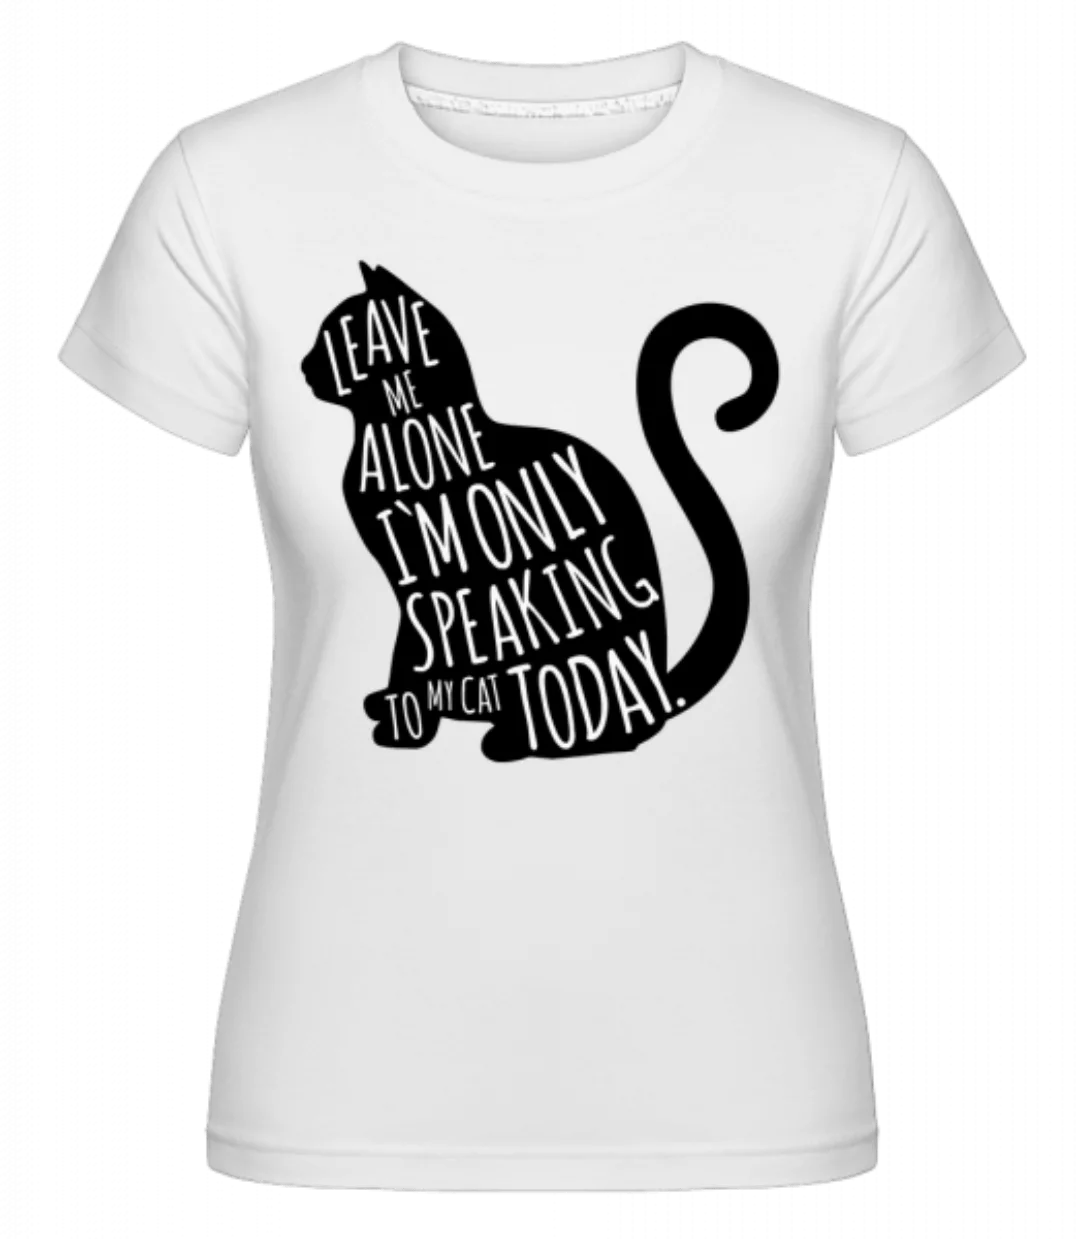 Only Speaking To My Cat · Shirtinator Frauen T-Shirt günstig online kaufen